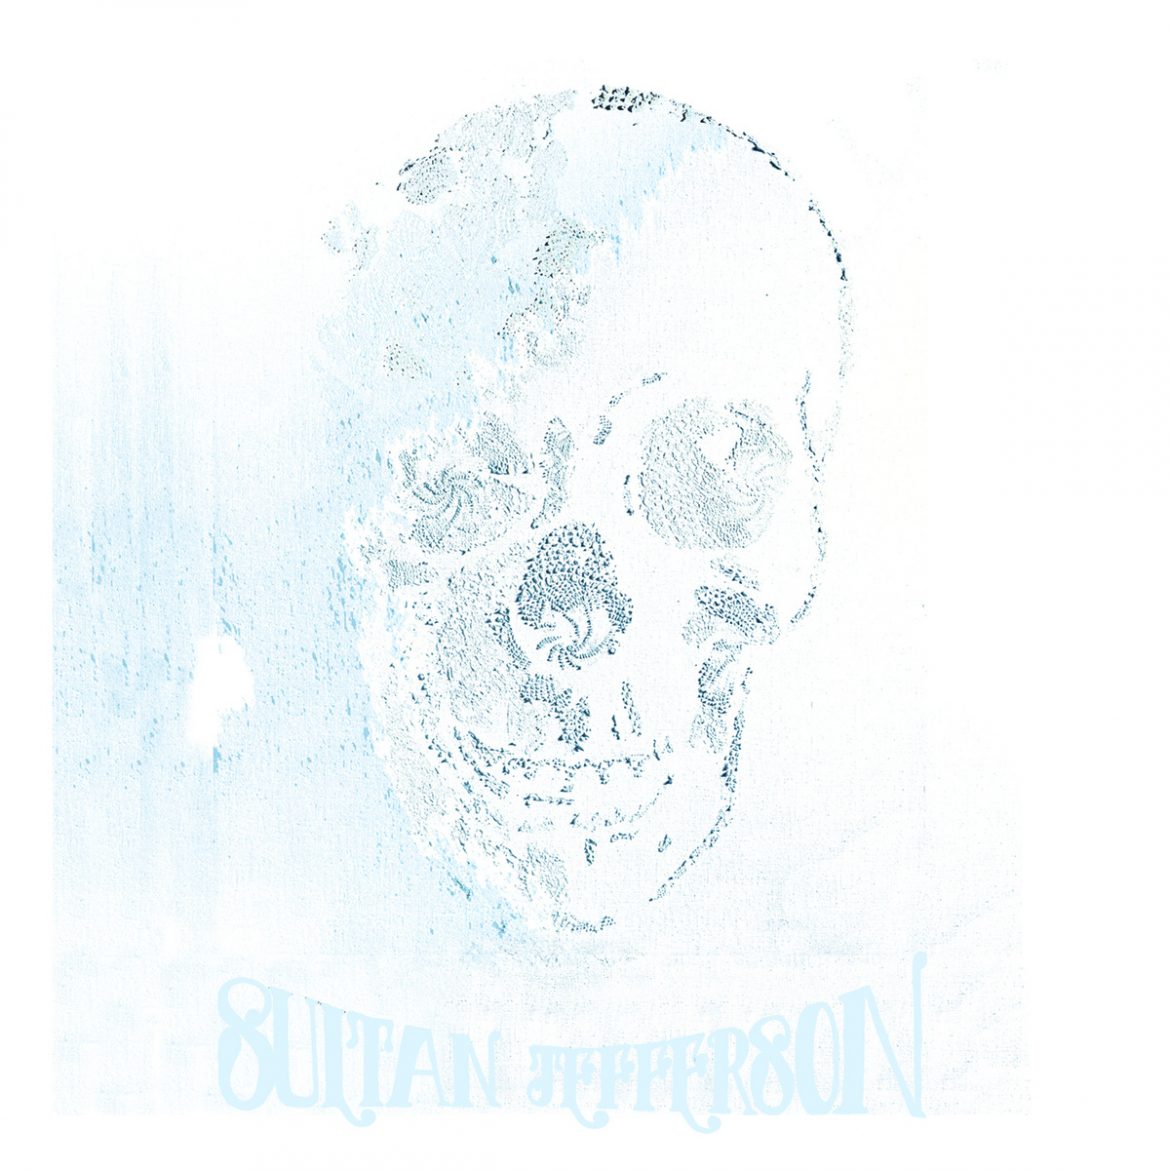 Sultan Jefferson "#3" nuevo disco